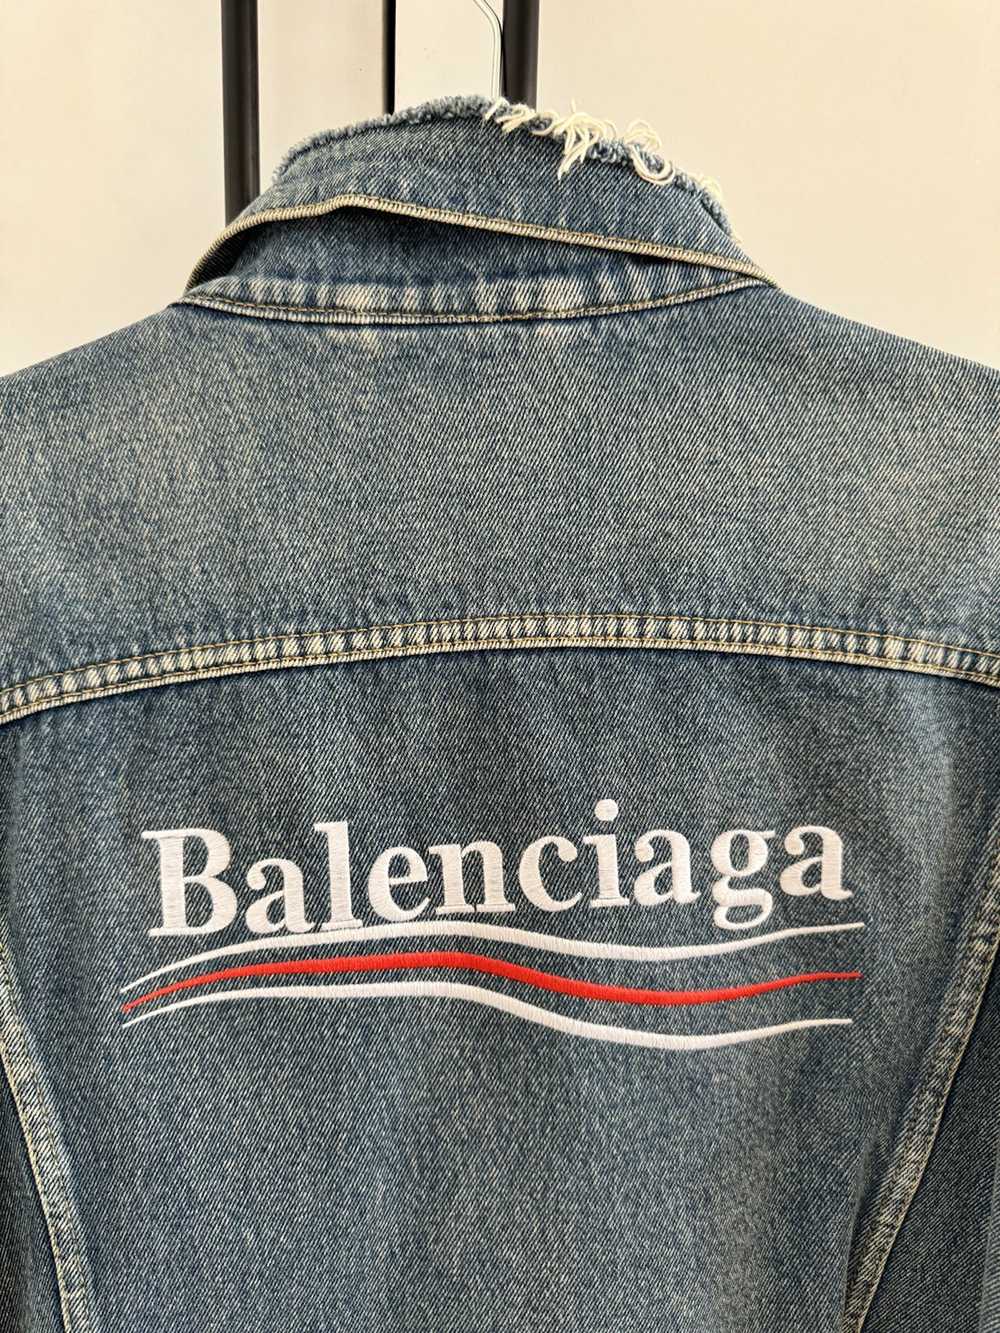 Balenciaga Balenciaga logo Denim Jacket - image 4